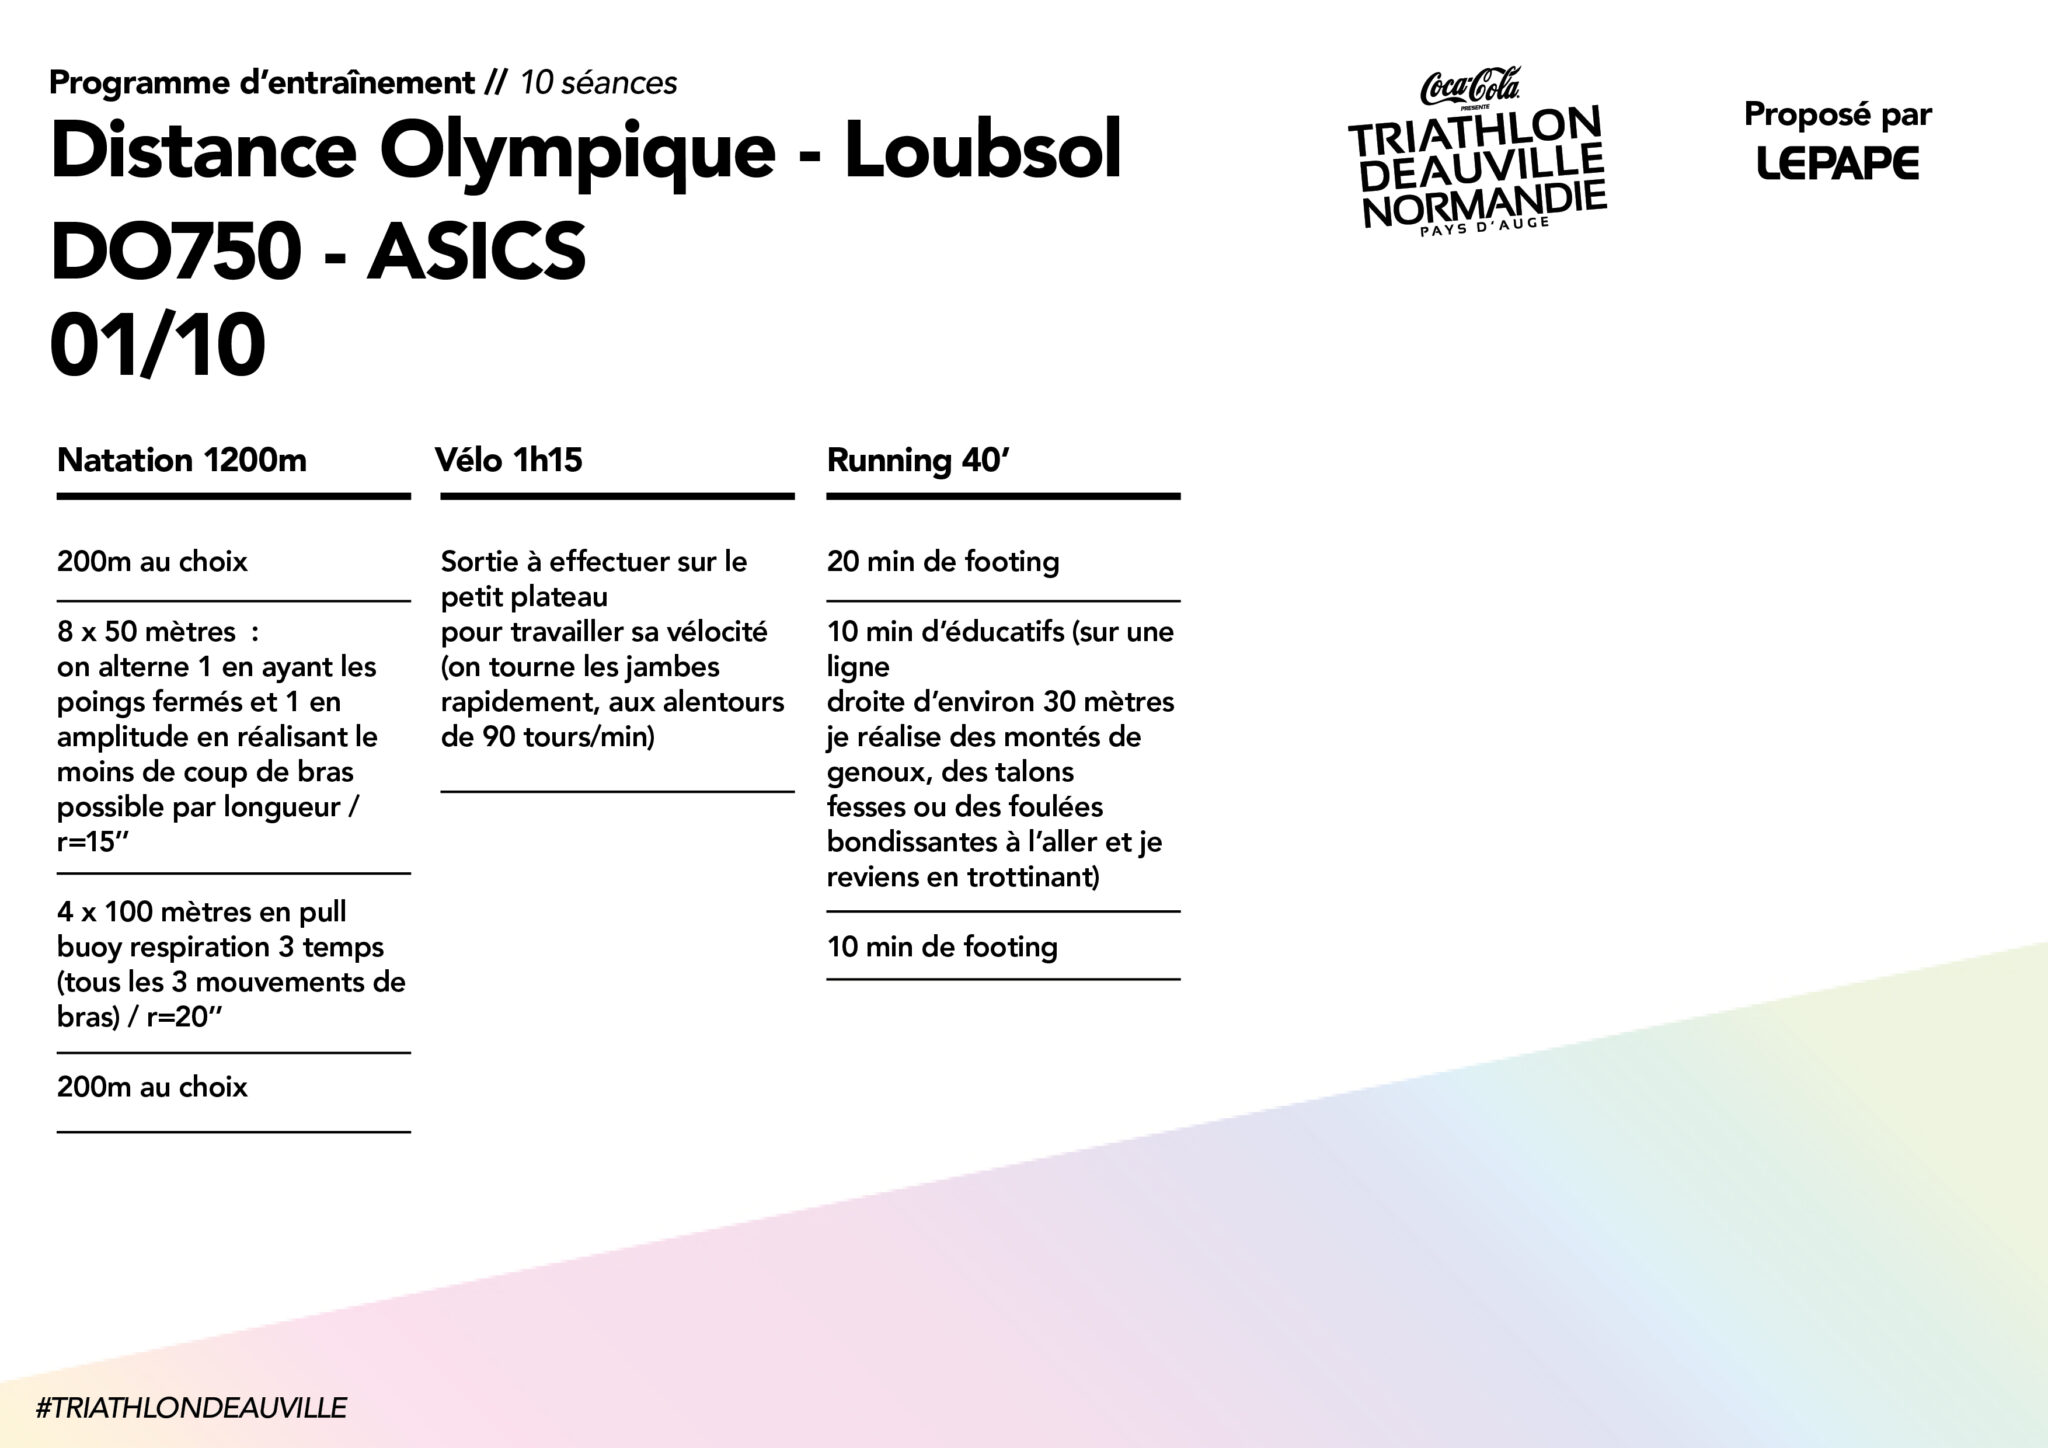 Plan d'entrainement Distance Olympique - Loubsol et DO750 - Asics